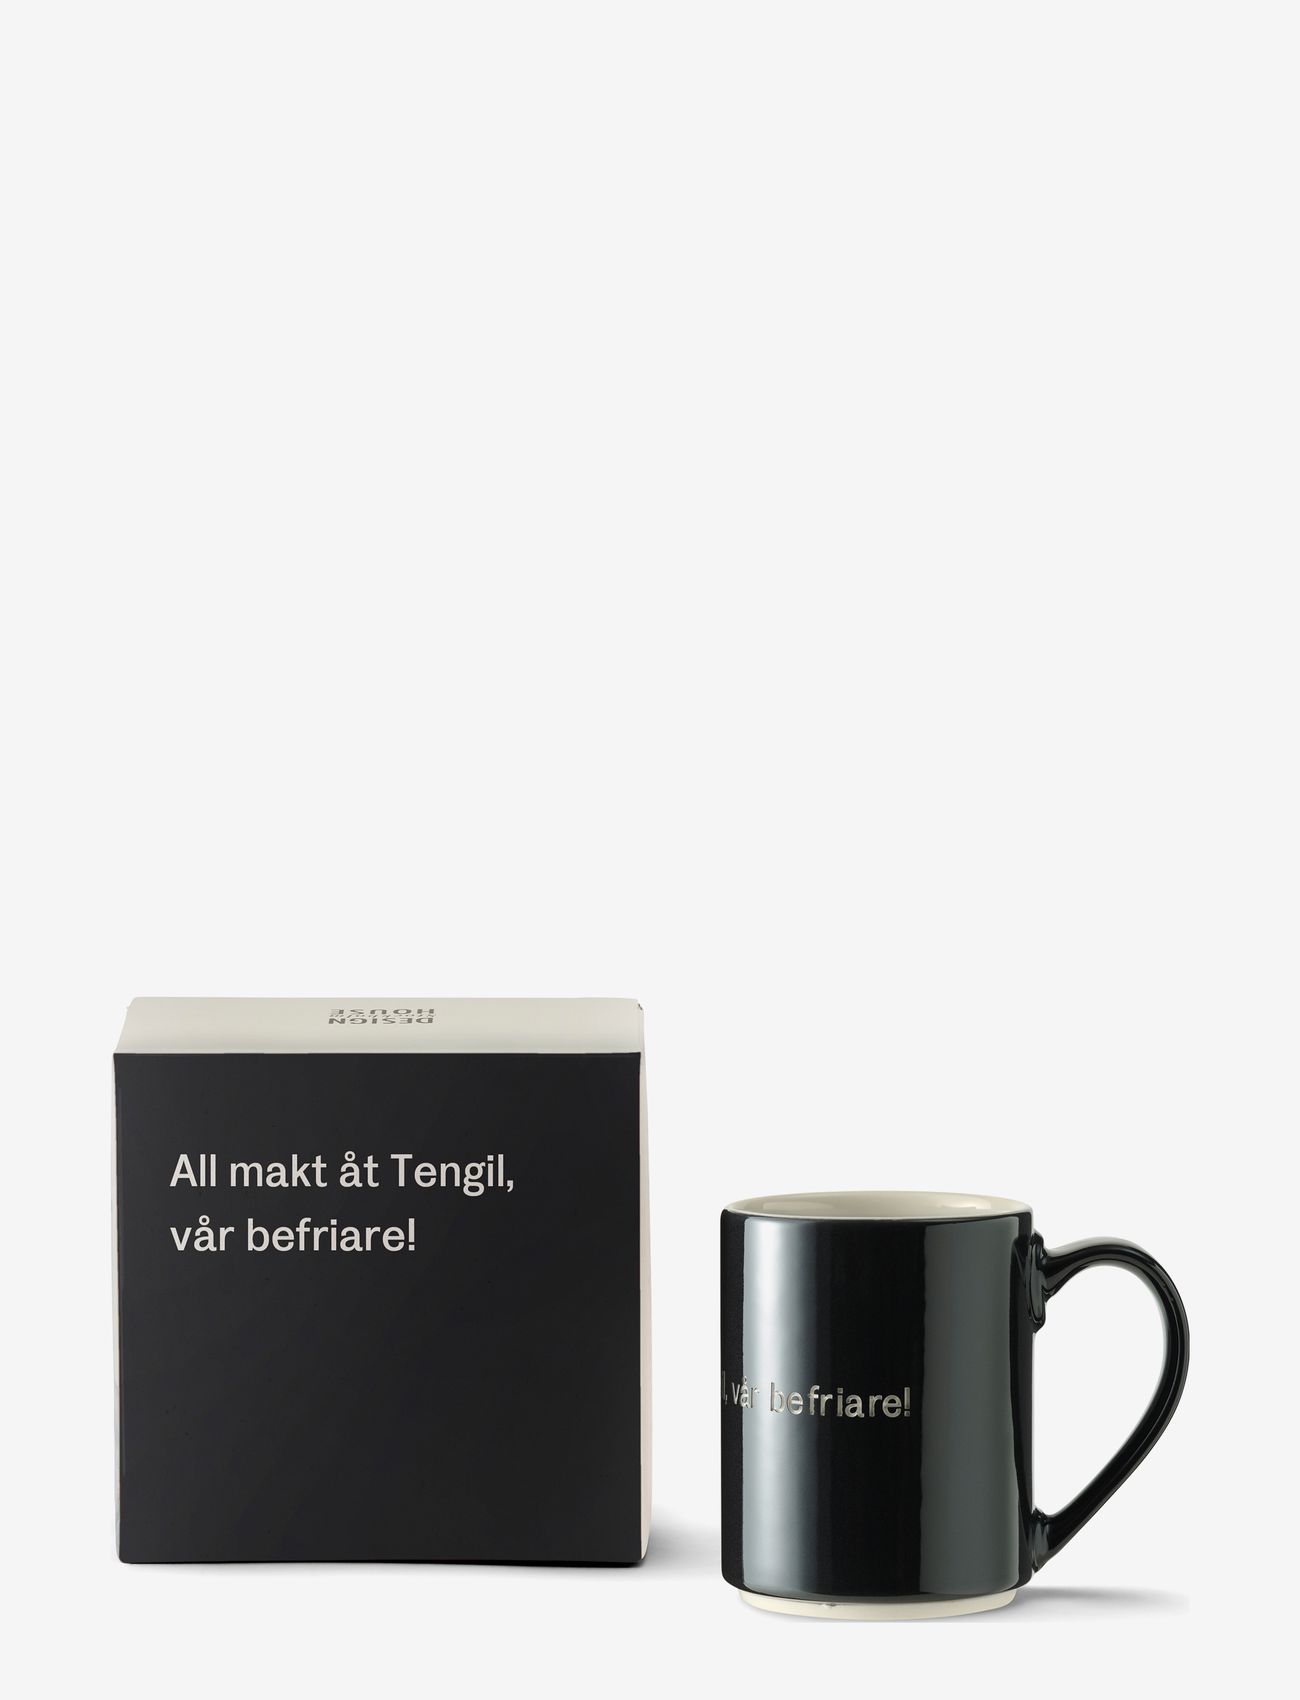 Design House Stockholm - Astrid Lindgren mug - laveste priser - black - 0